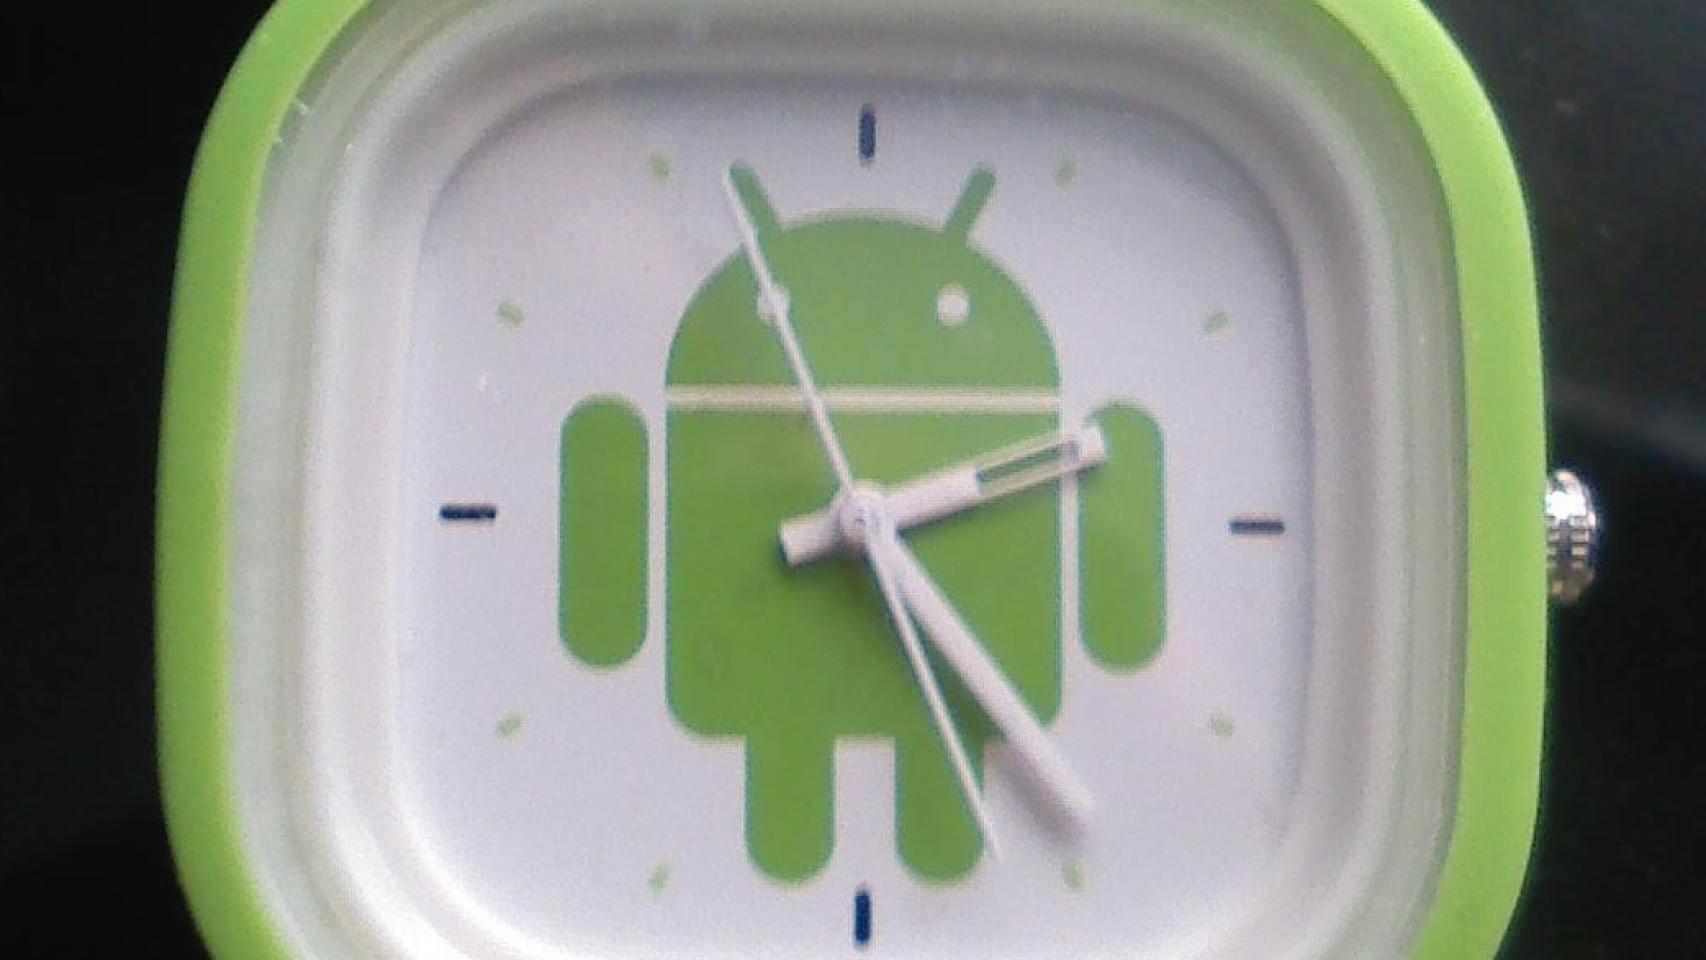 Innovación y accesorios, gafas y relojes de Google, vístete de Android